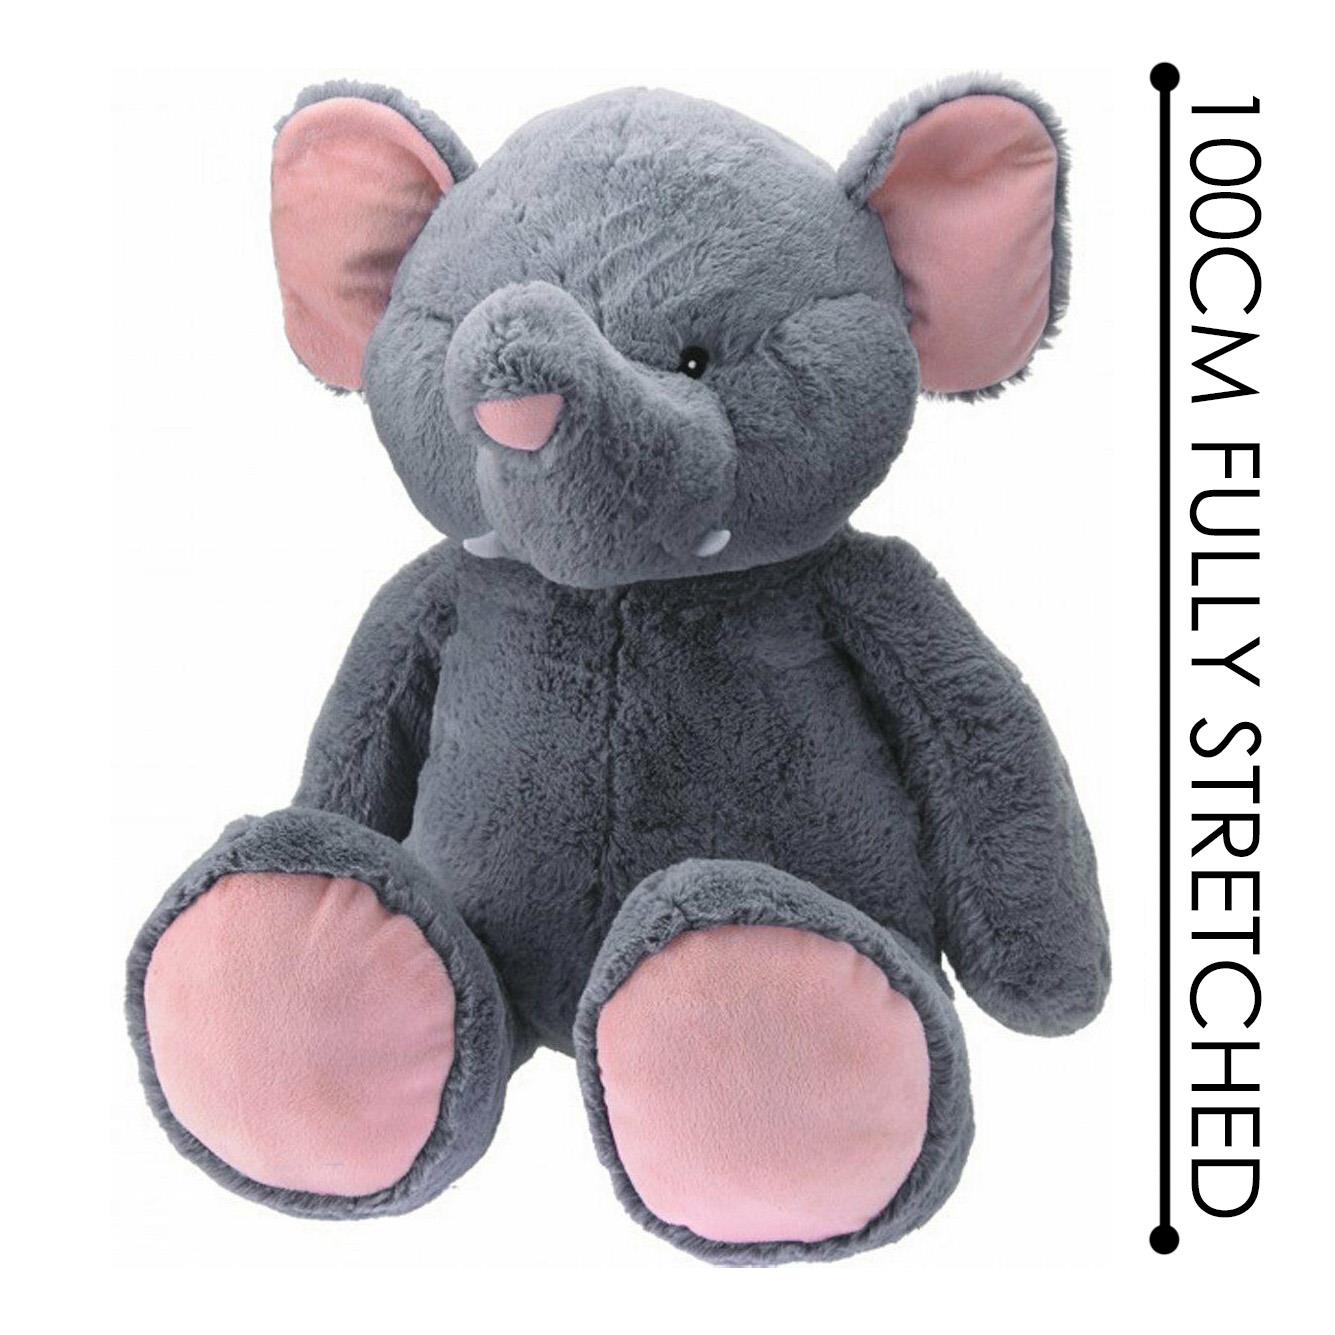 40" Jumbo Elephant Soft Toy by The Magic Toy Shop - UKBuyZone